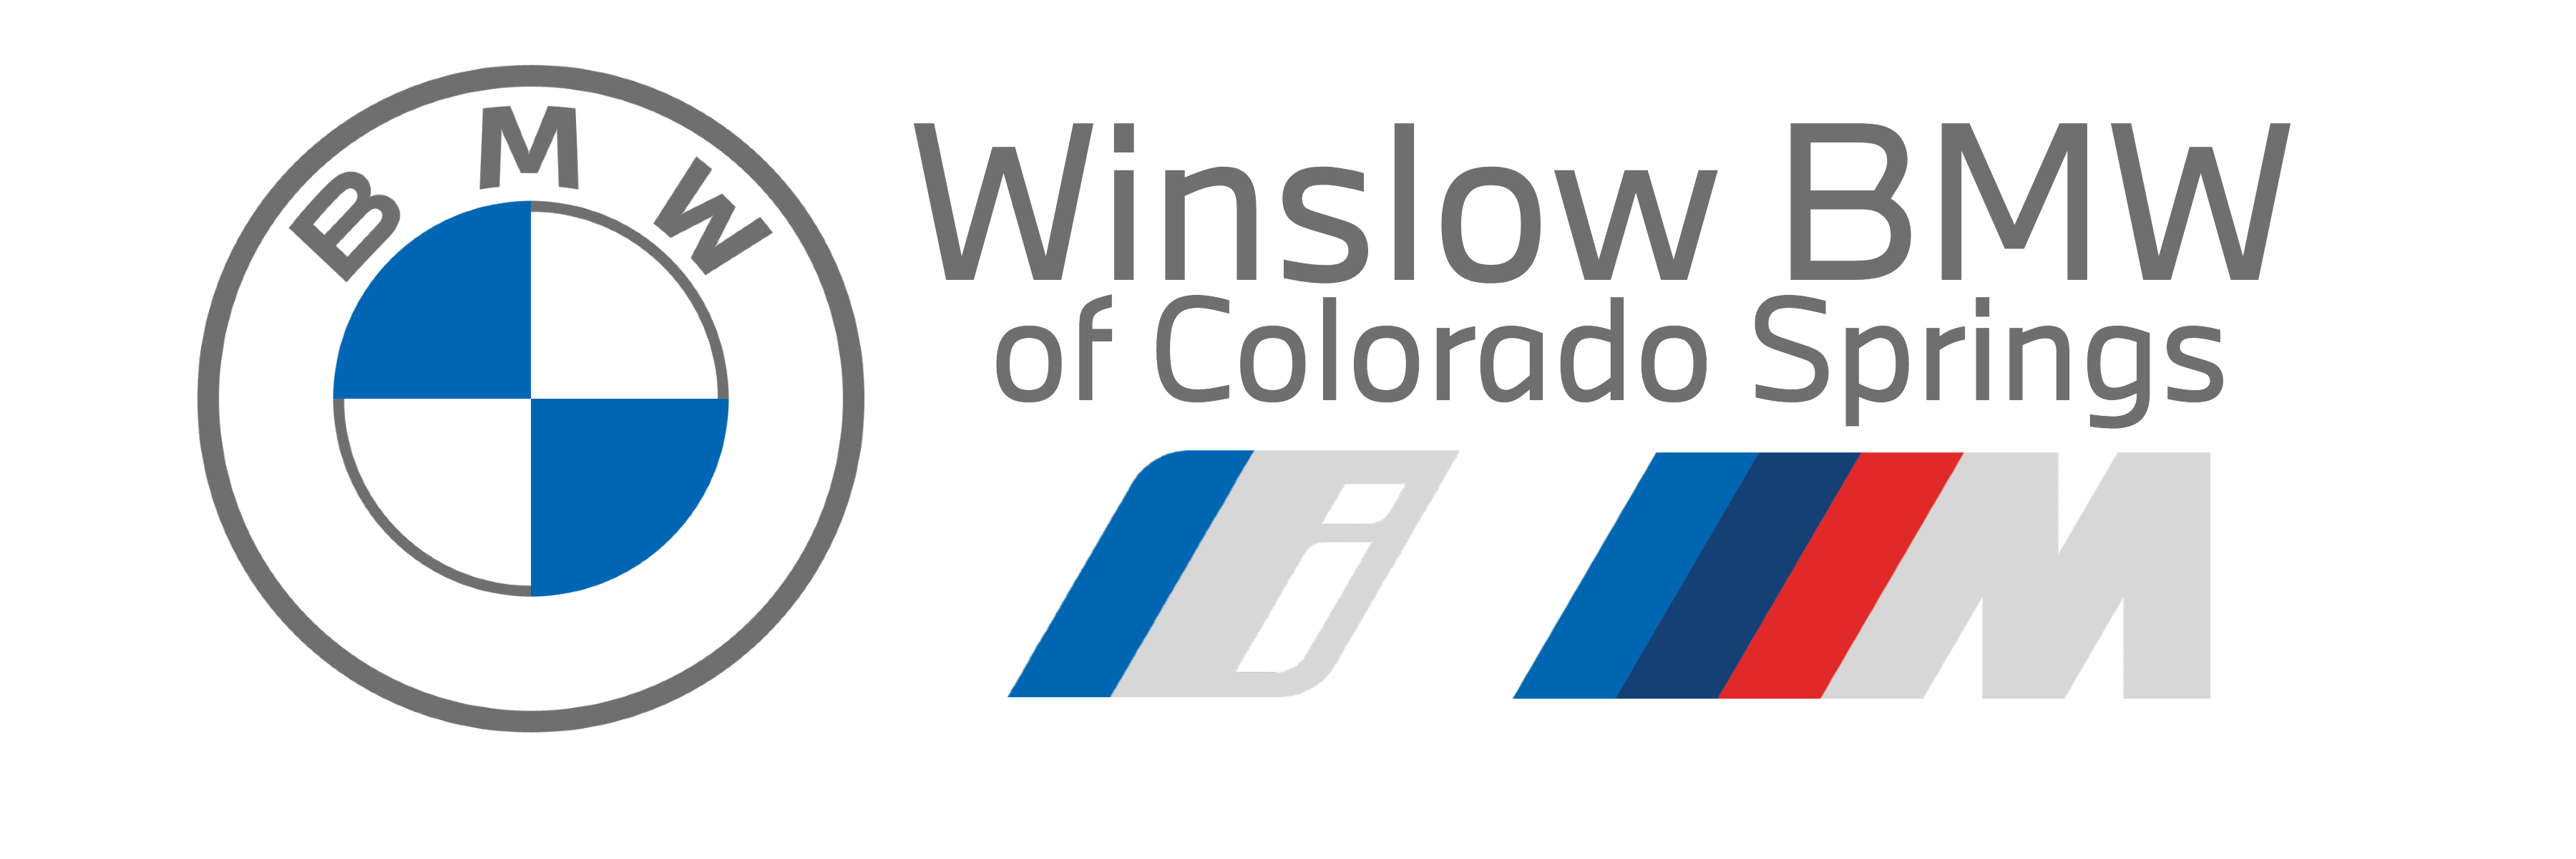 Winslow BMW de Colorado Springs (Nivel 4)